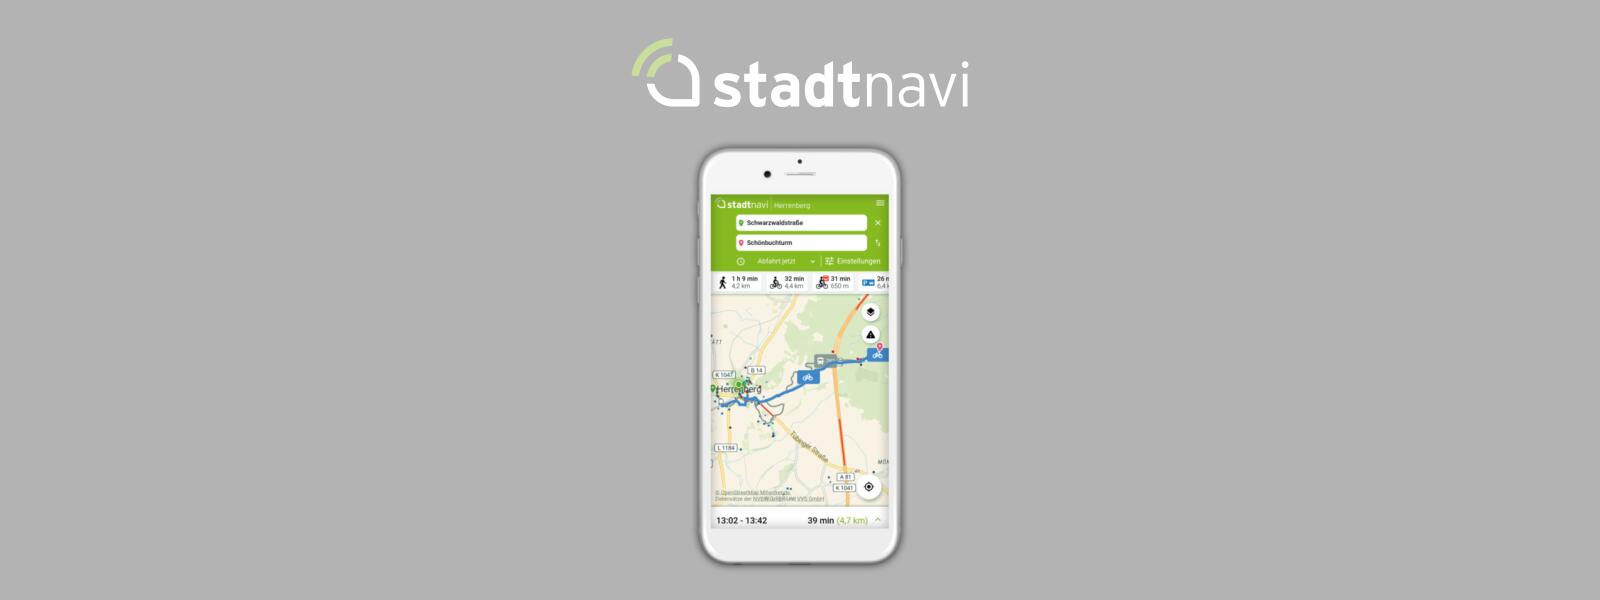 Stadtnavi impulsa un aire máis limpo con software libre